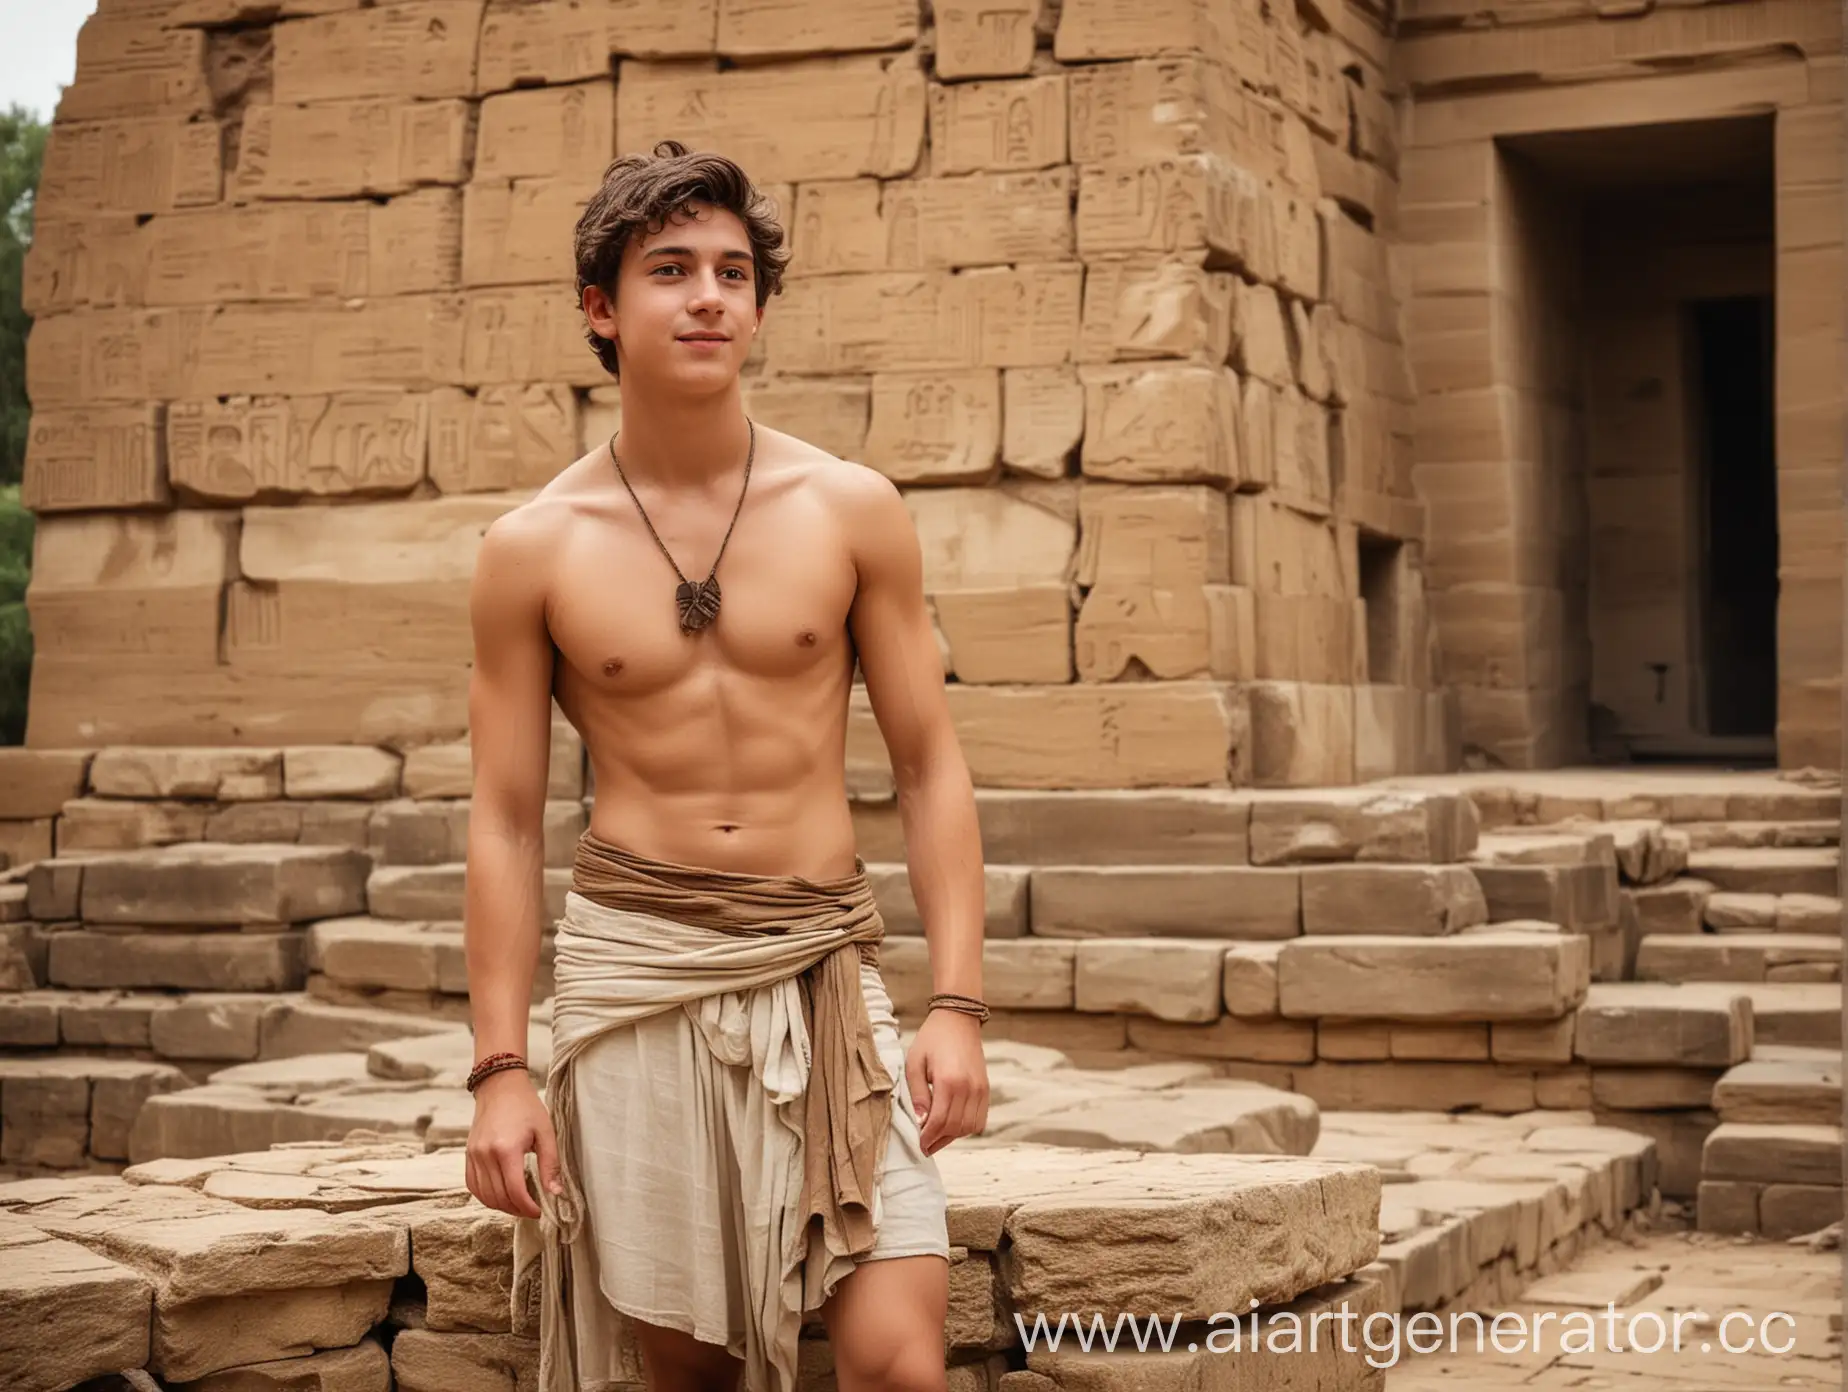 красивый парень лет двадцати в набедренной повязке строит пирамиду в античном египетском саду